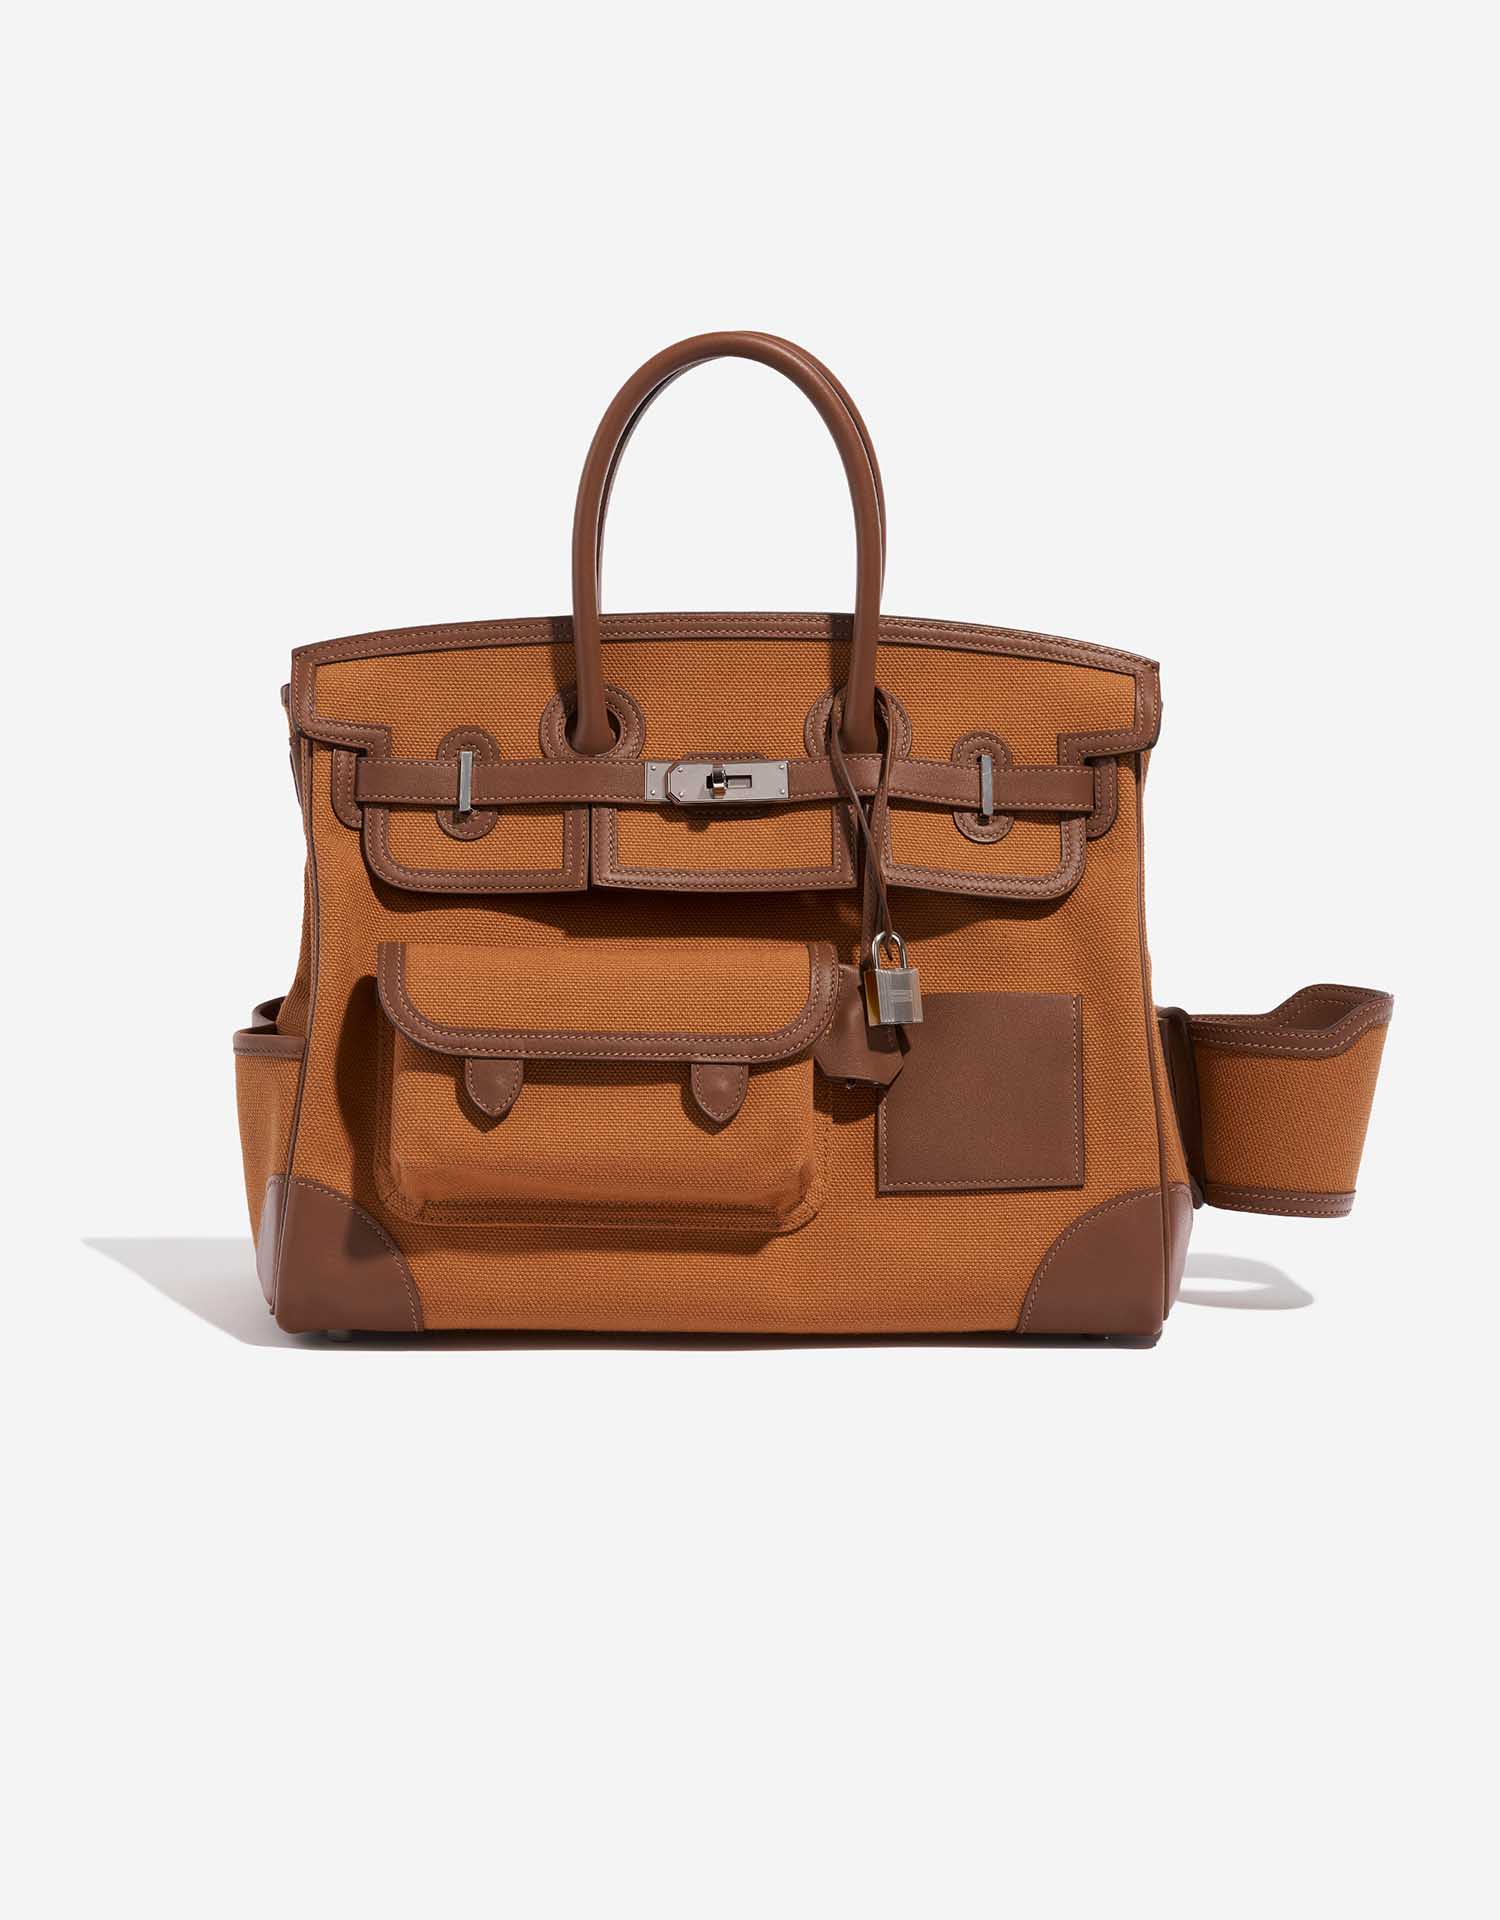 Sac Hermès d'occasion Birkin Cargo 35 Swift / Toile Goeland Marron / Gold Brown Front | Vendez votre sac de créateur sur Saclab.com